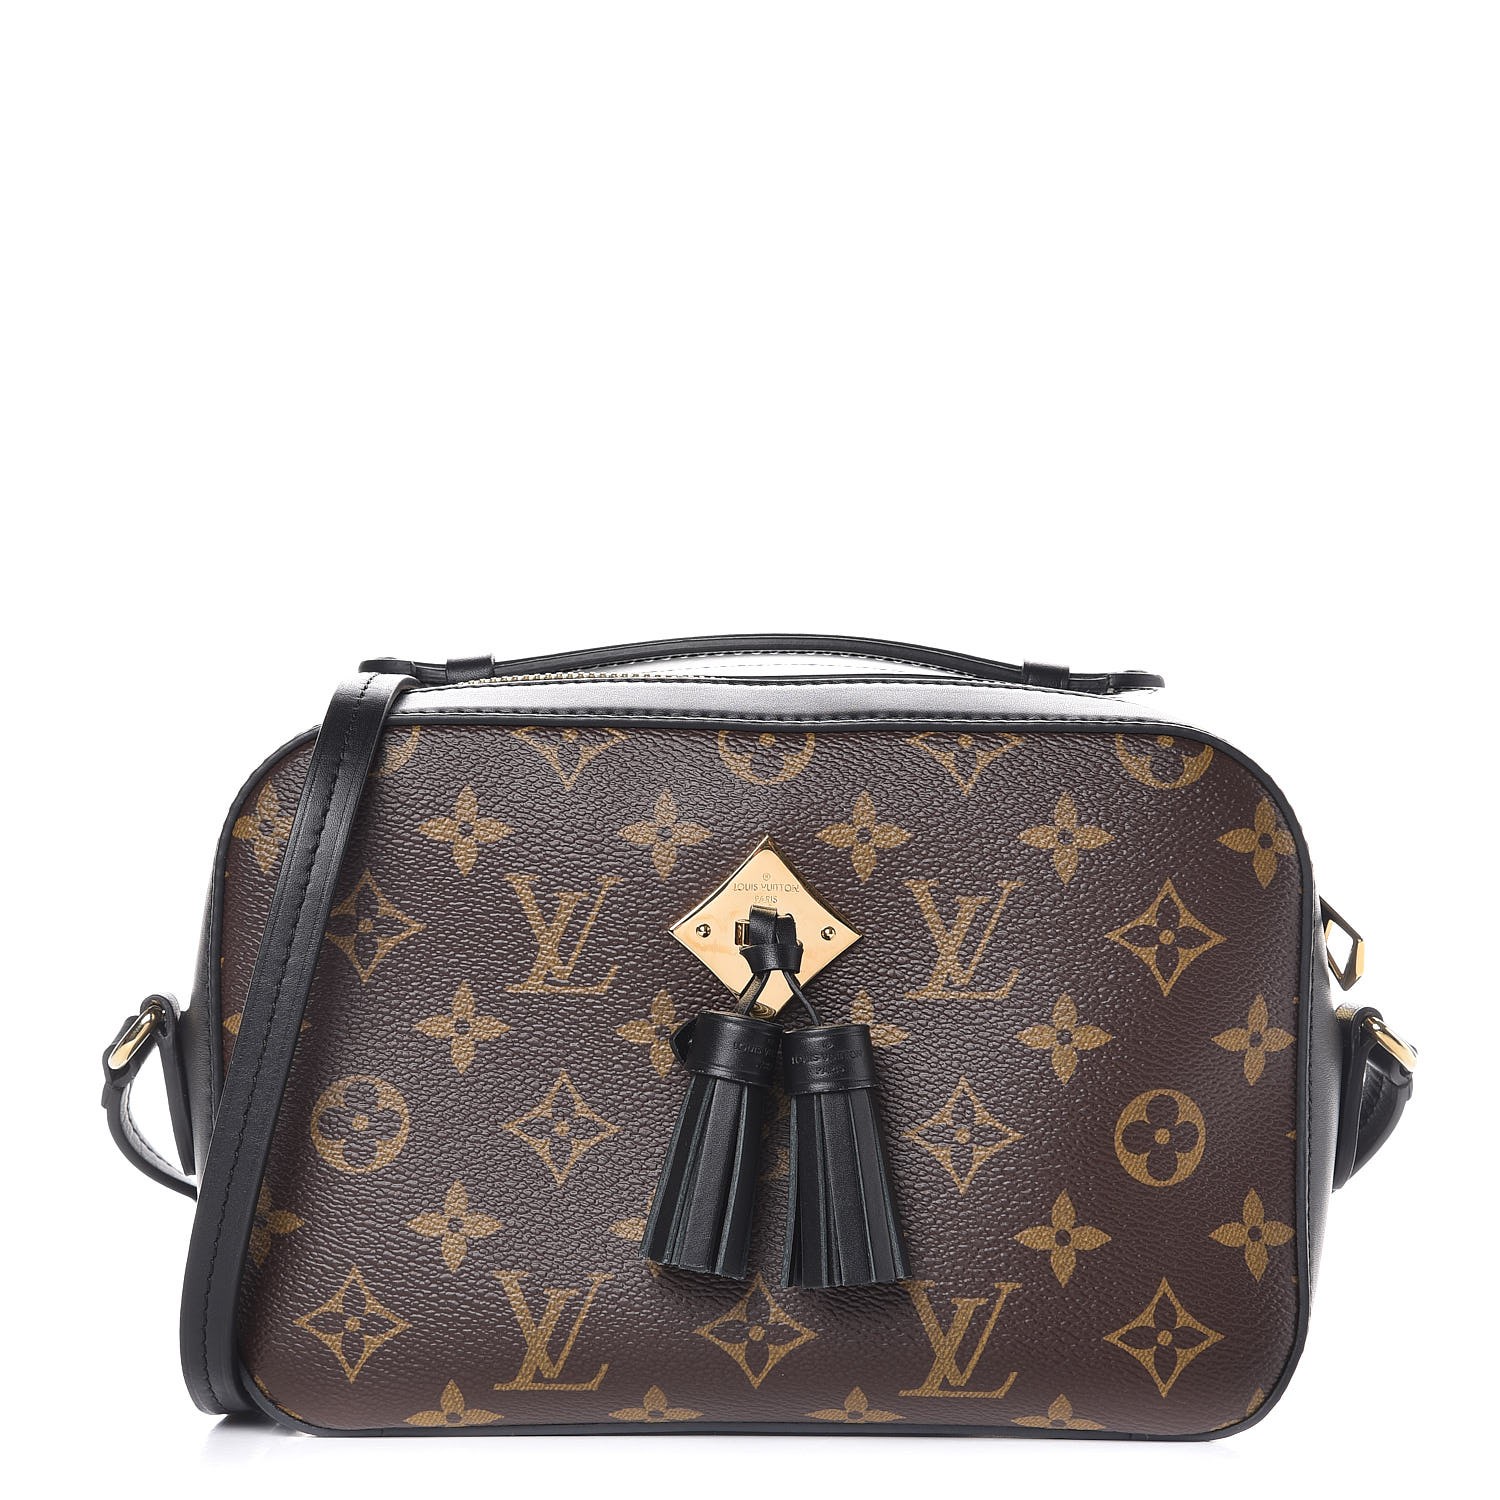 Bag Organizer for Louis Vuitton Speedy 25 (Organizer Type C) - Zoomoni